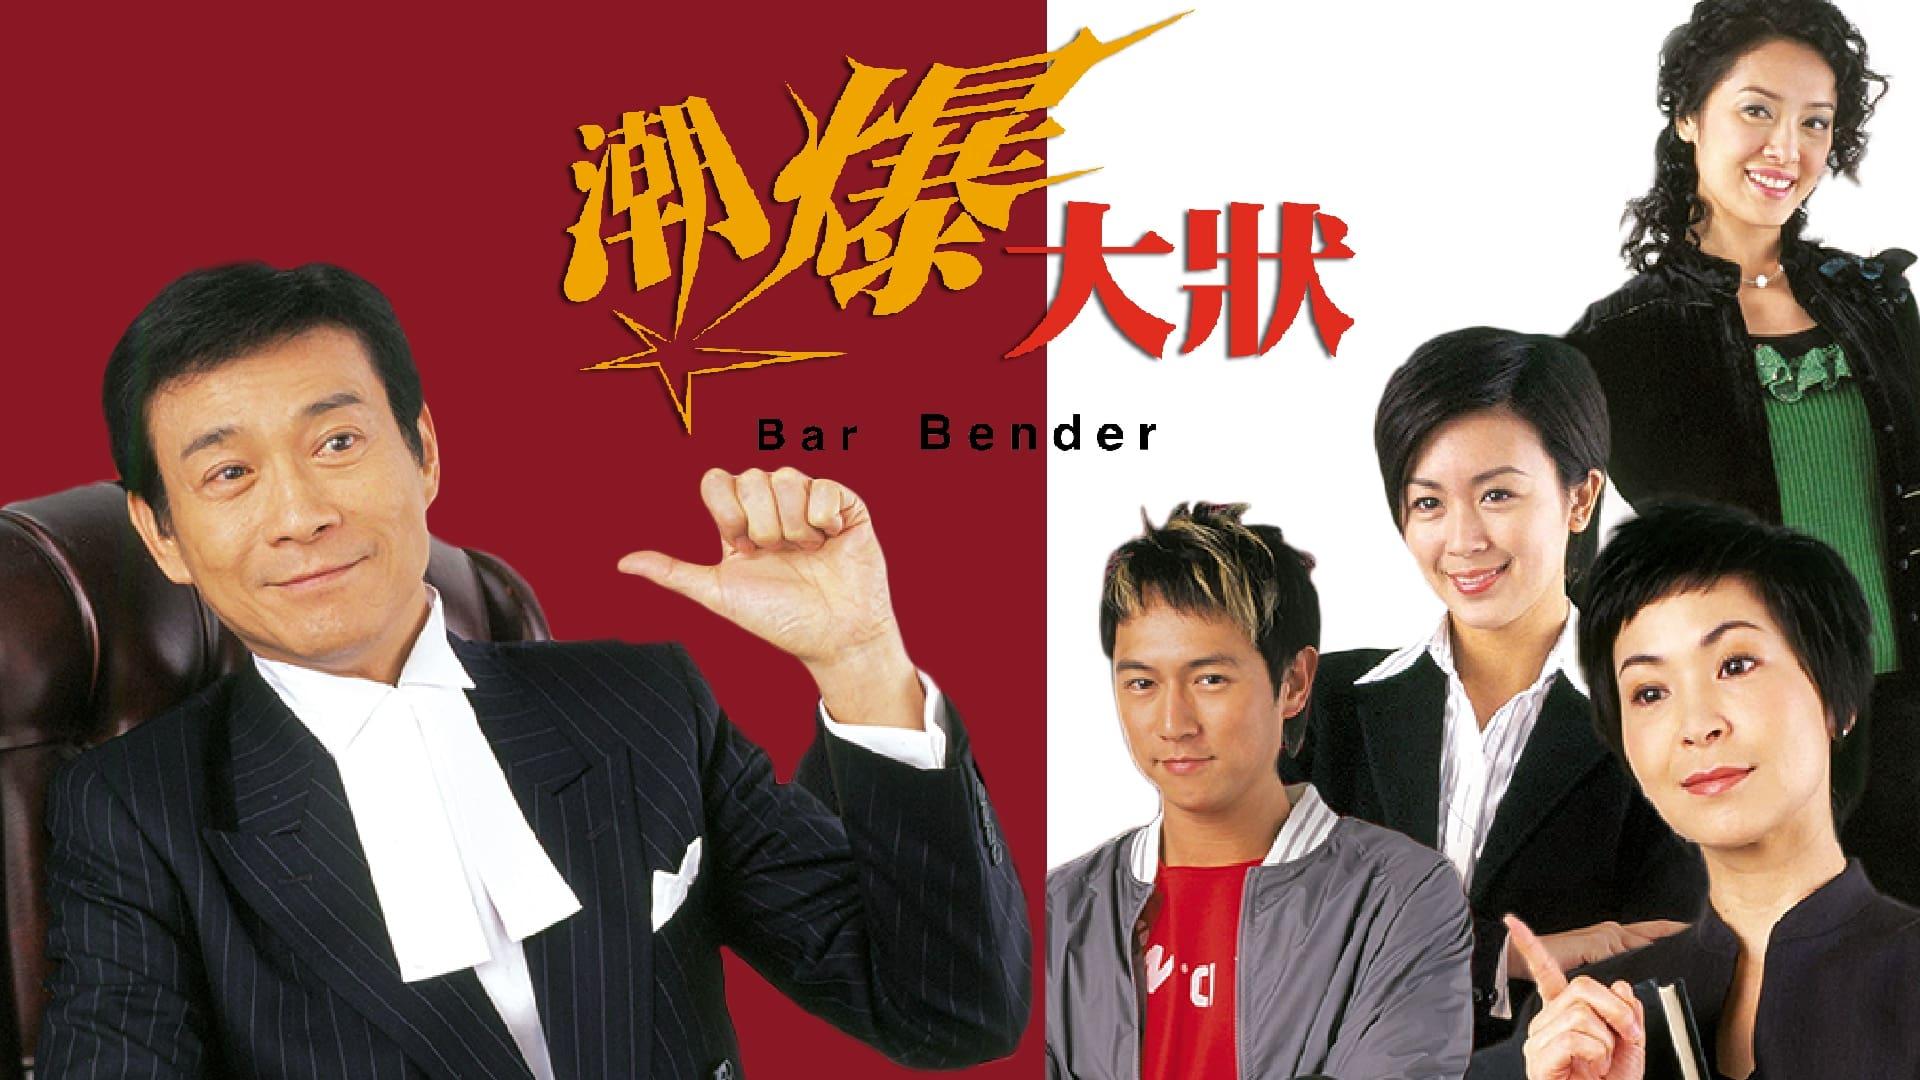 Bar Bender backdrop